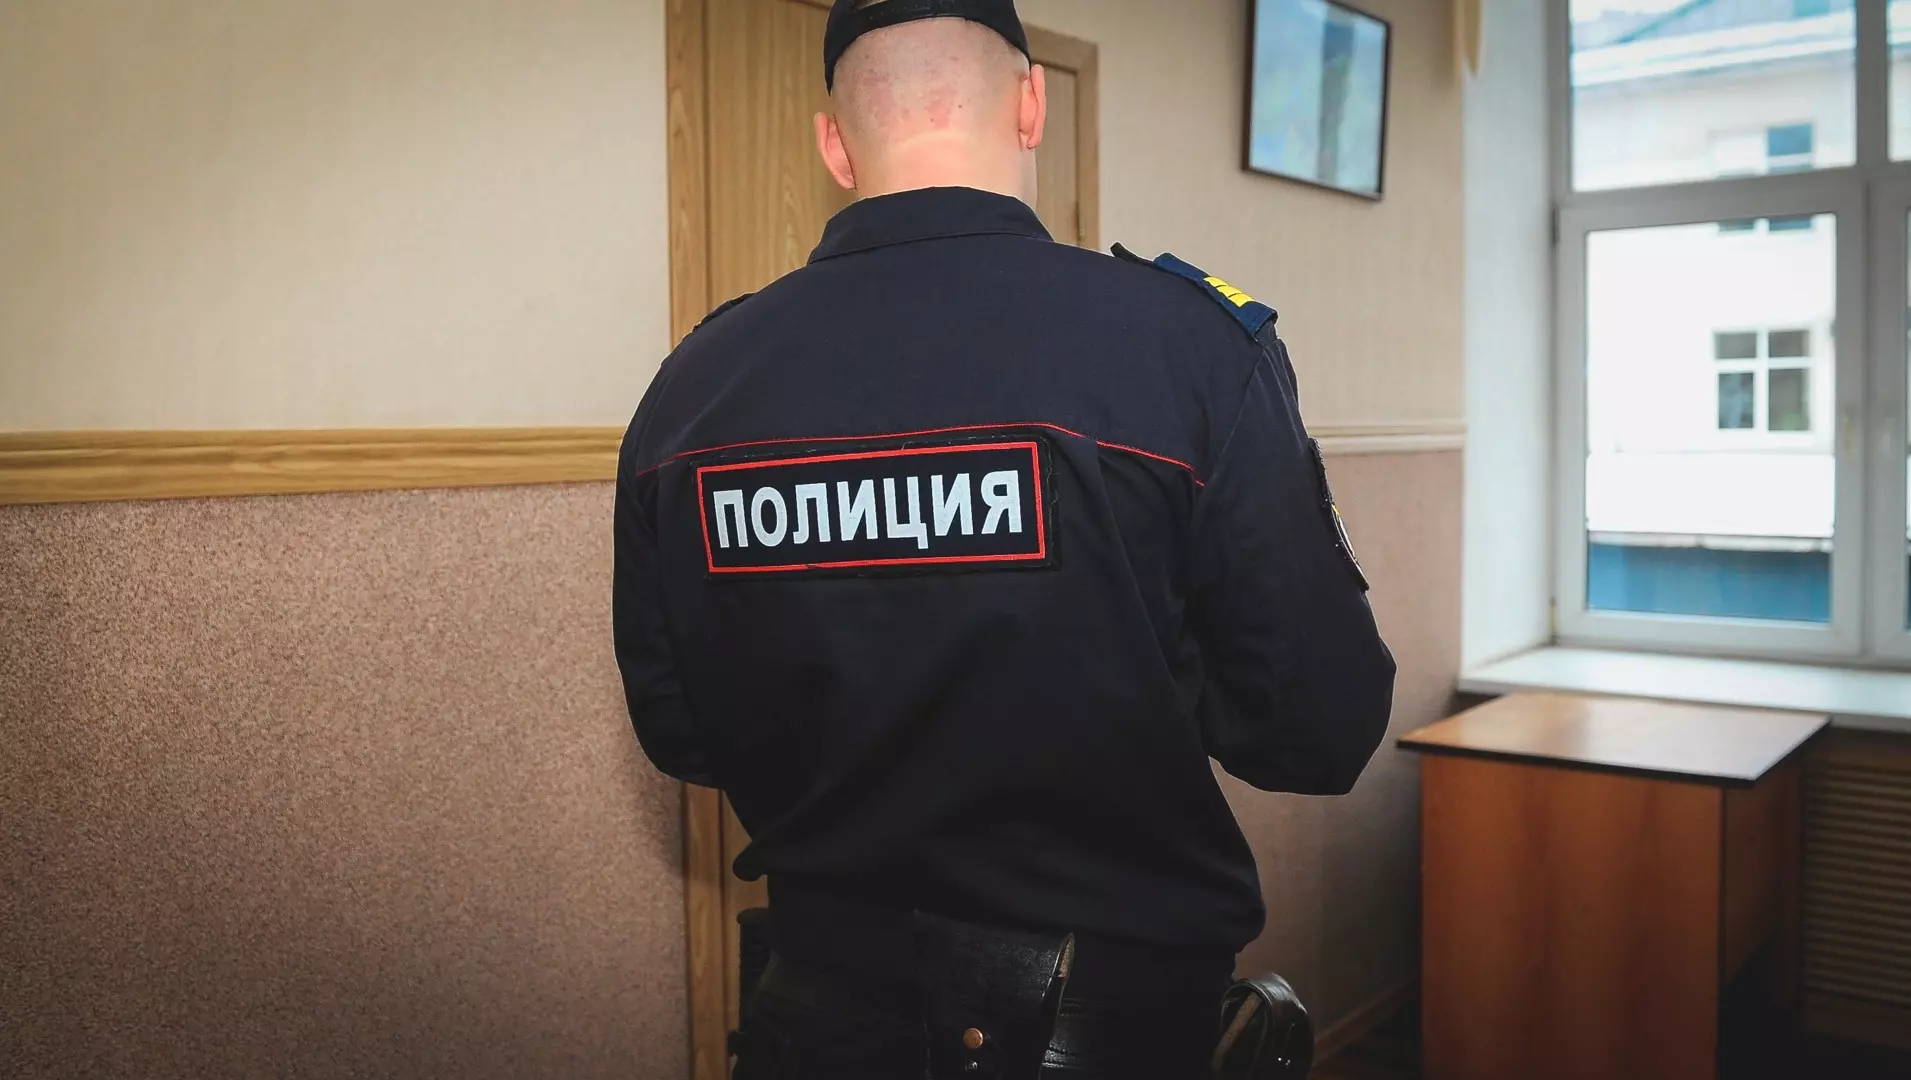 В Березниках будут судить мужчину за повторную дискредитацию ВС РФ — ему грозит срок